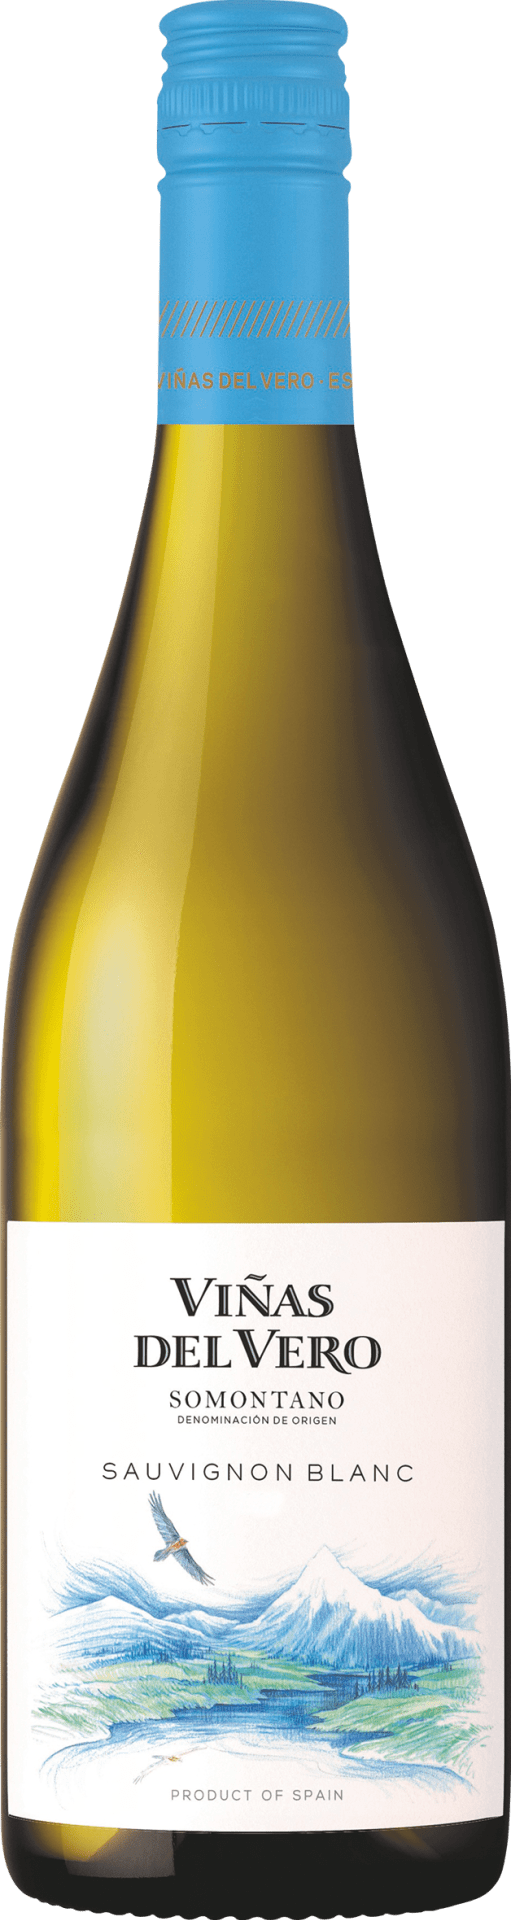 Vinas del Vero Sauvignon Blanc